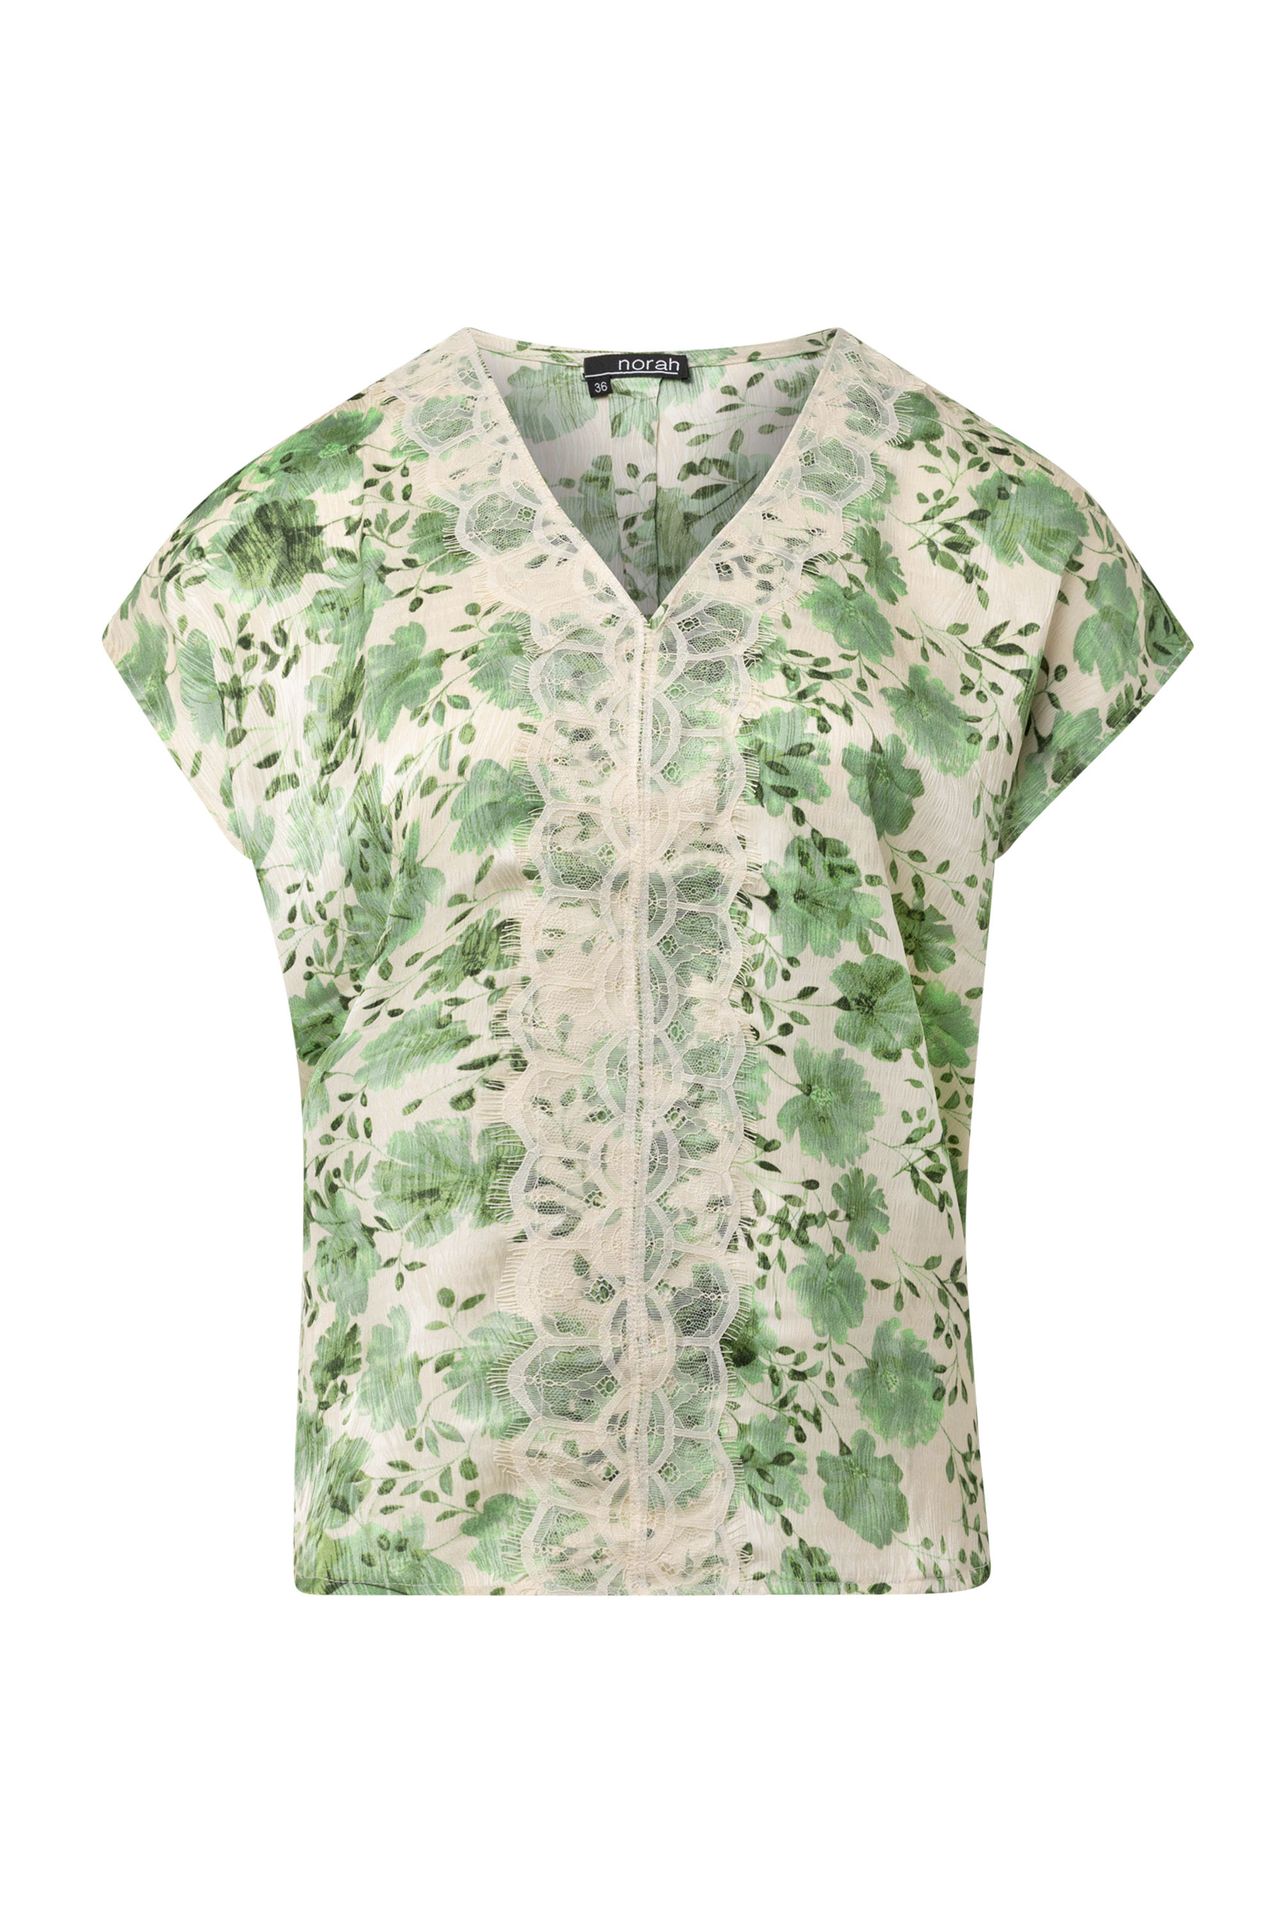 Norah Groene blouse green/ecru 214313-541